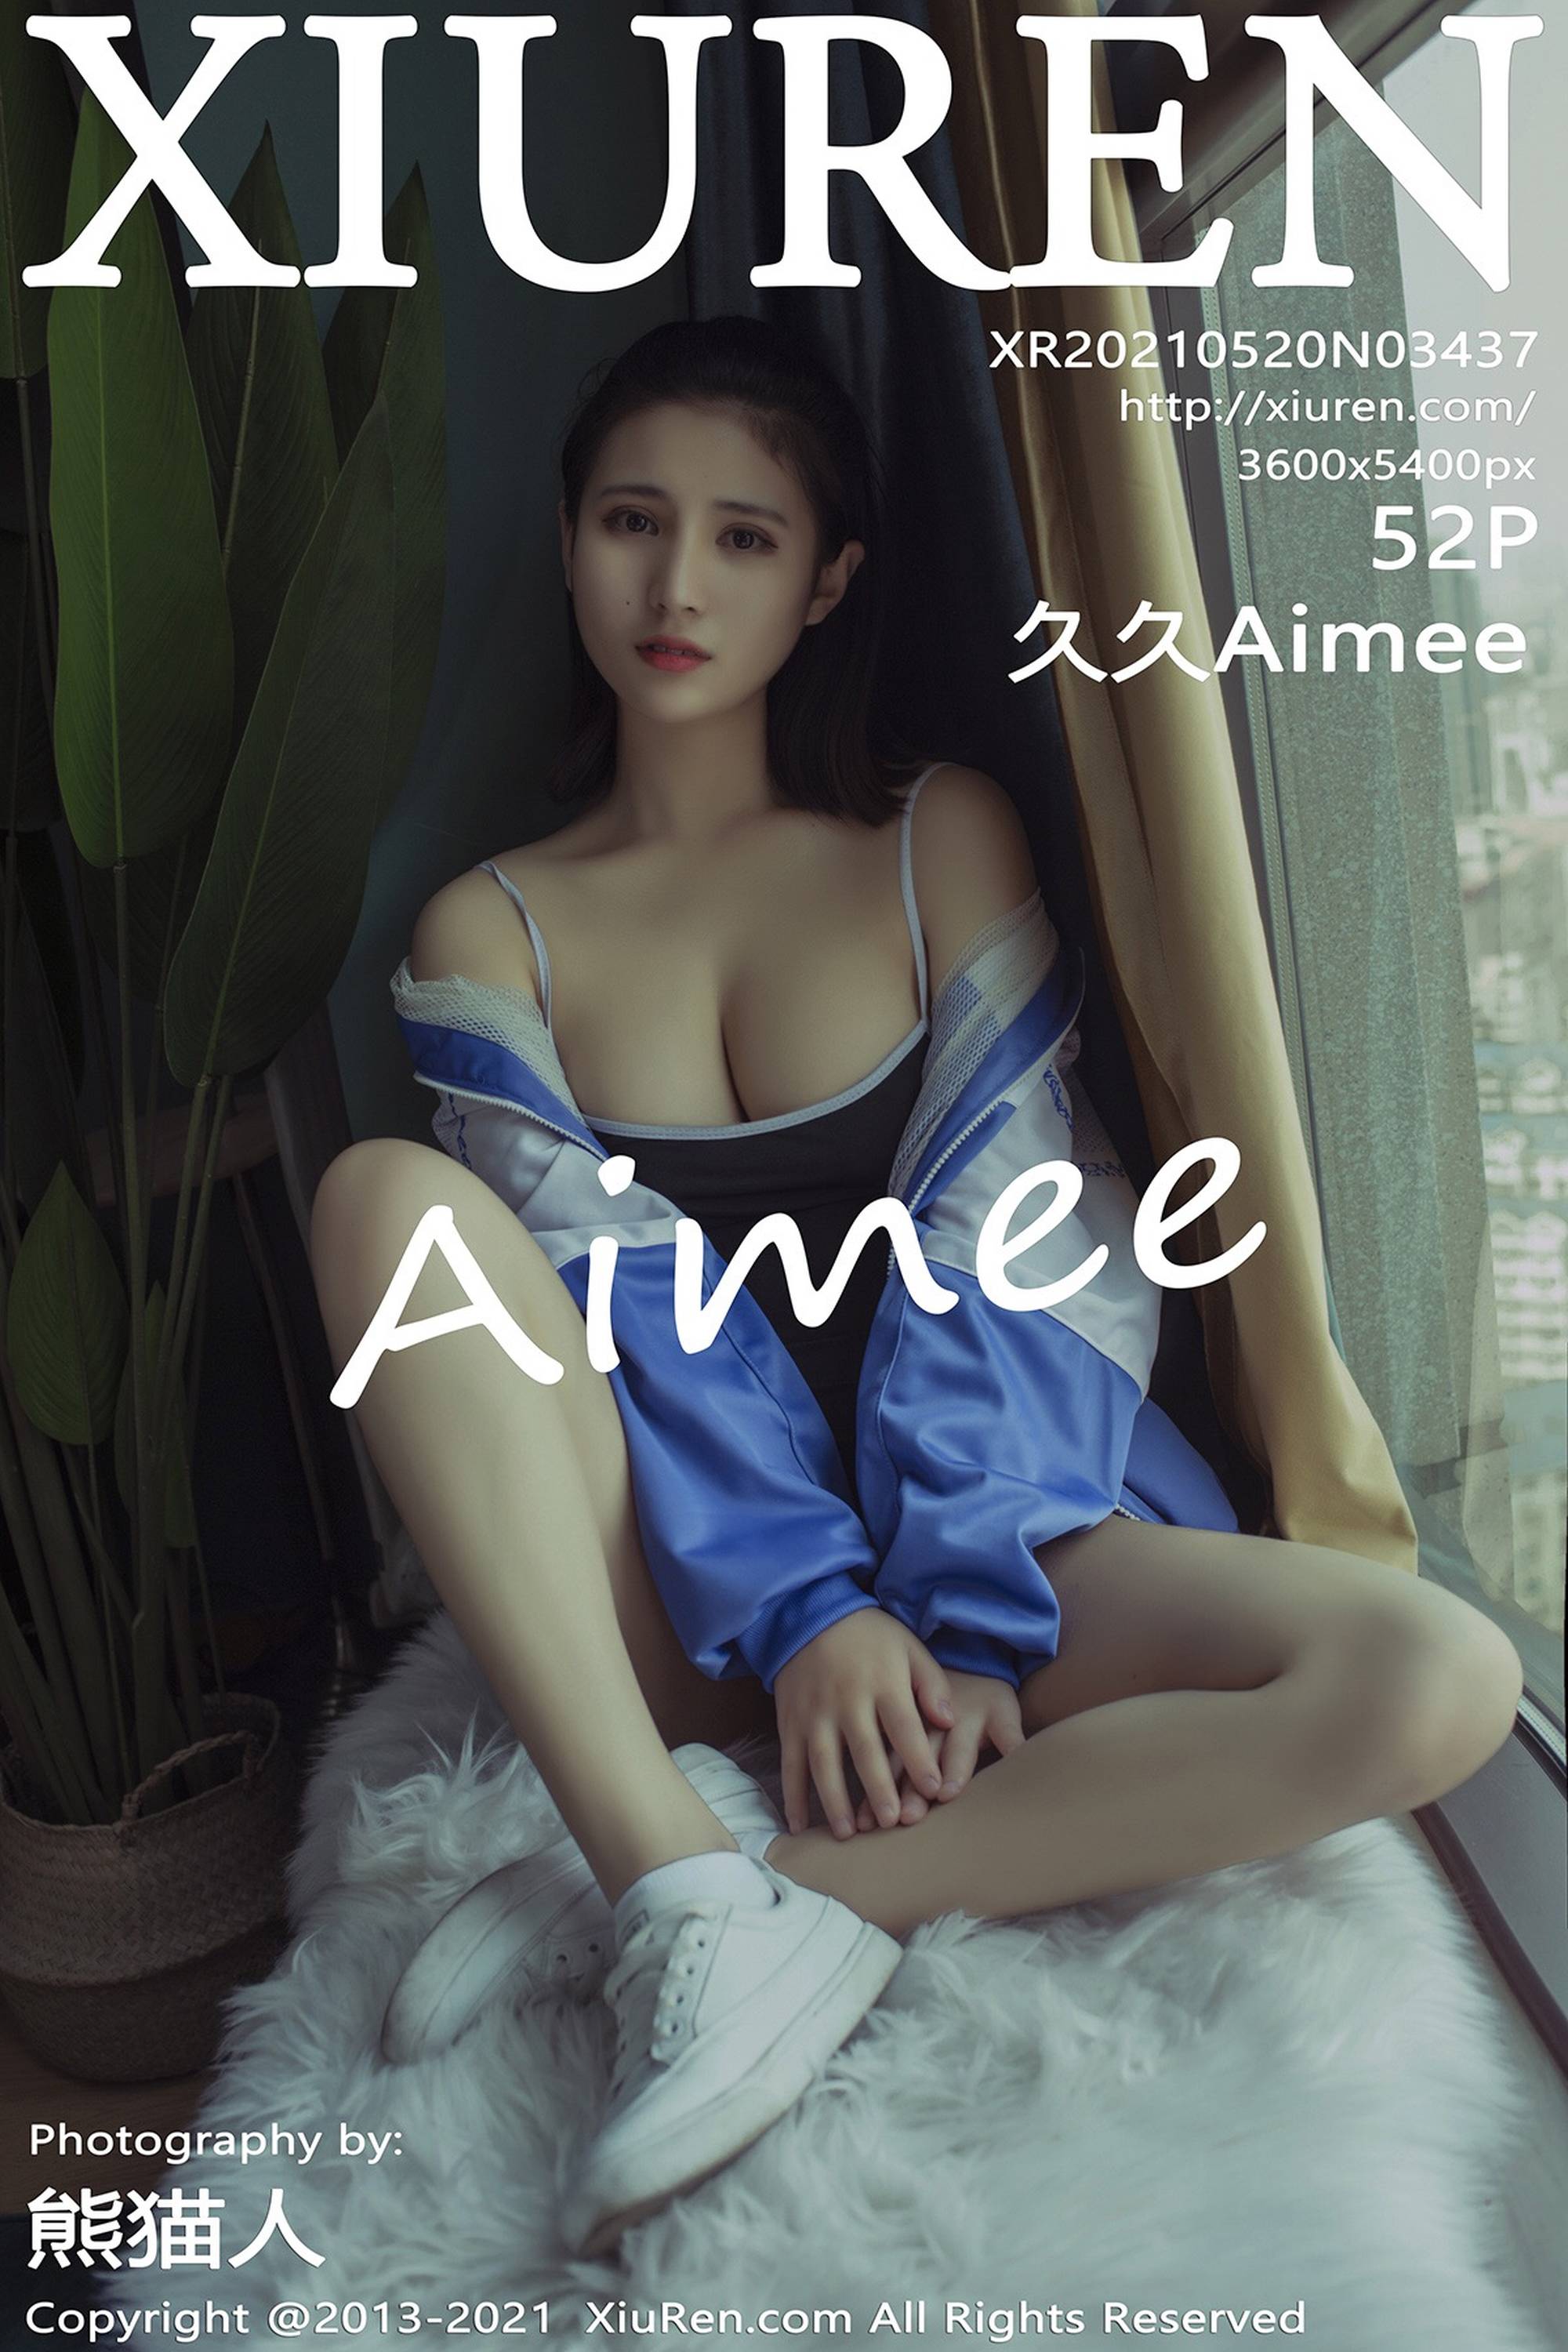 【Xiuren秀人系列】2021.05.20 No.3437 久久Aimee 完整版無水印寫真【53P】 - 貼圖 - 絲襪美腿 -